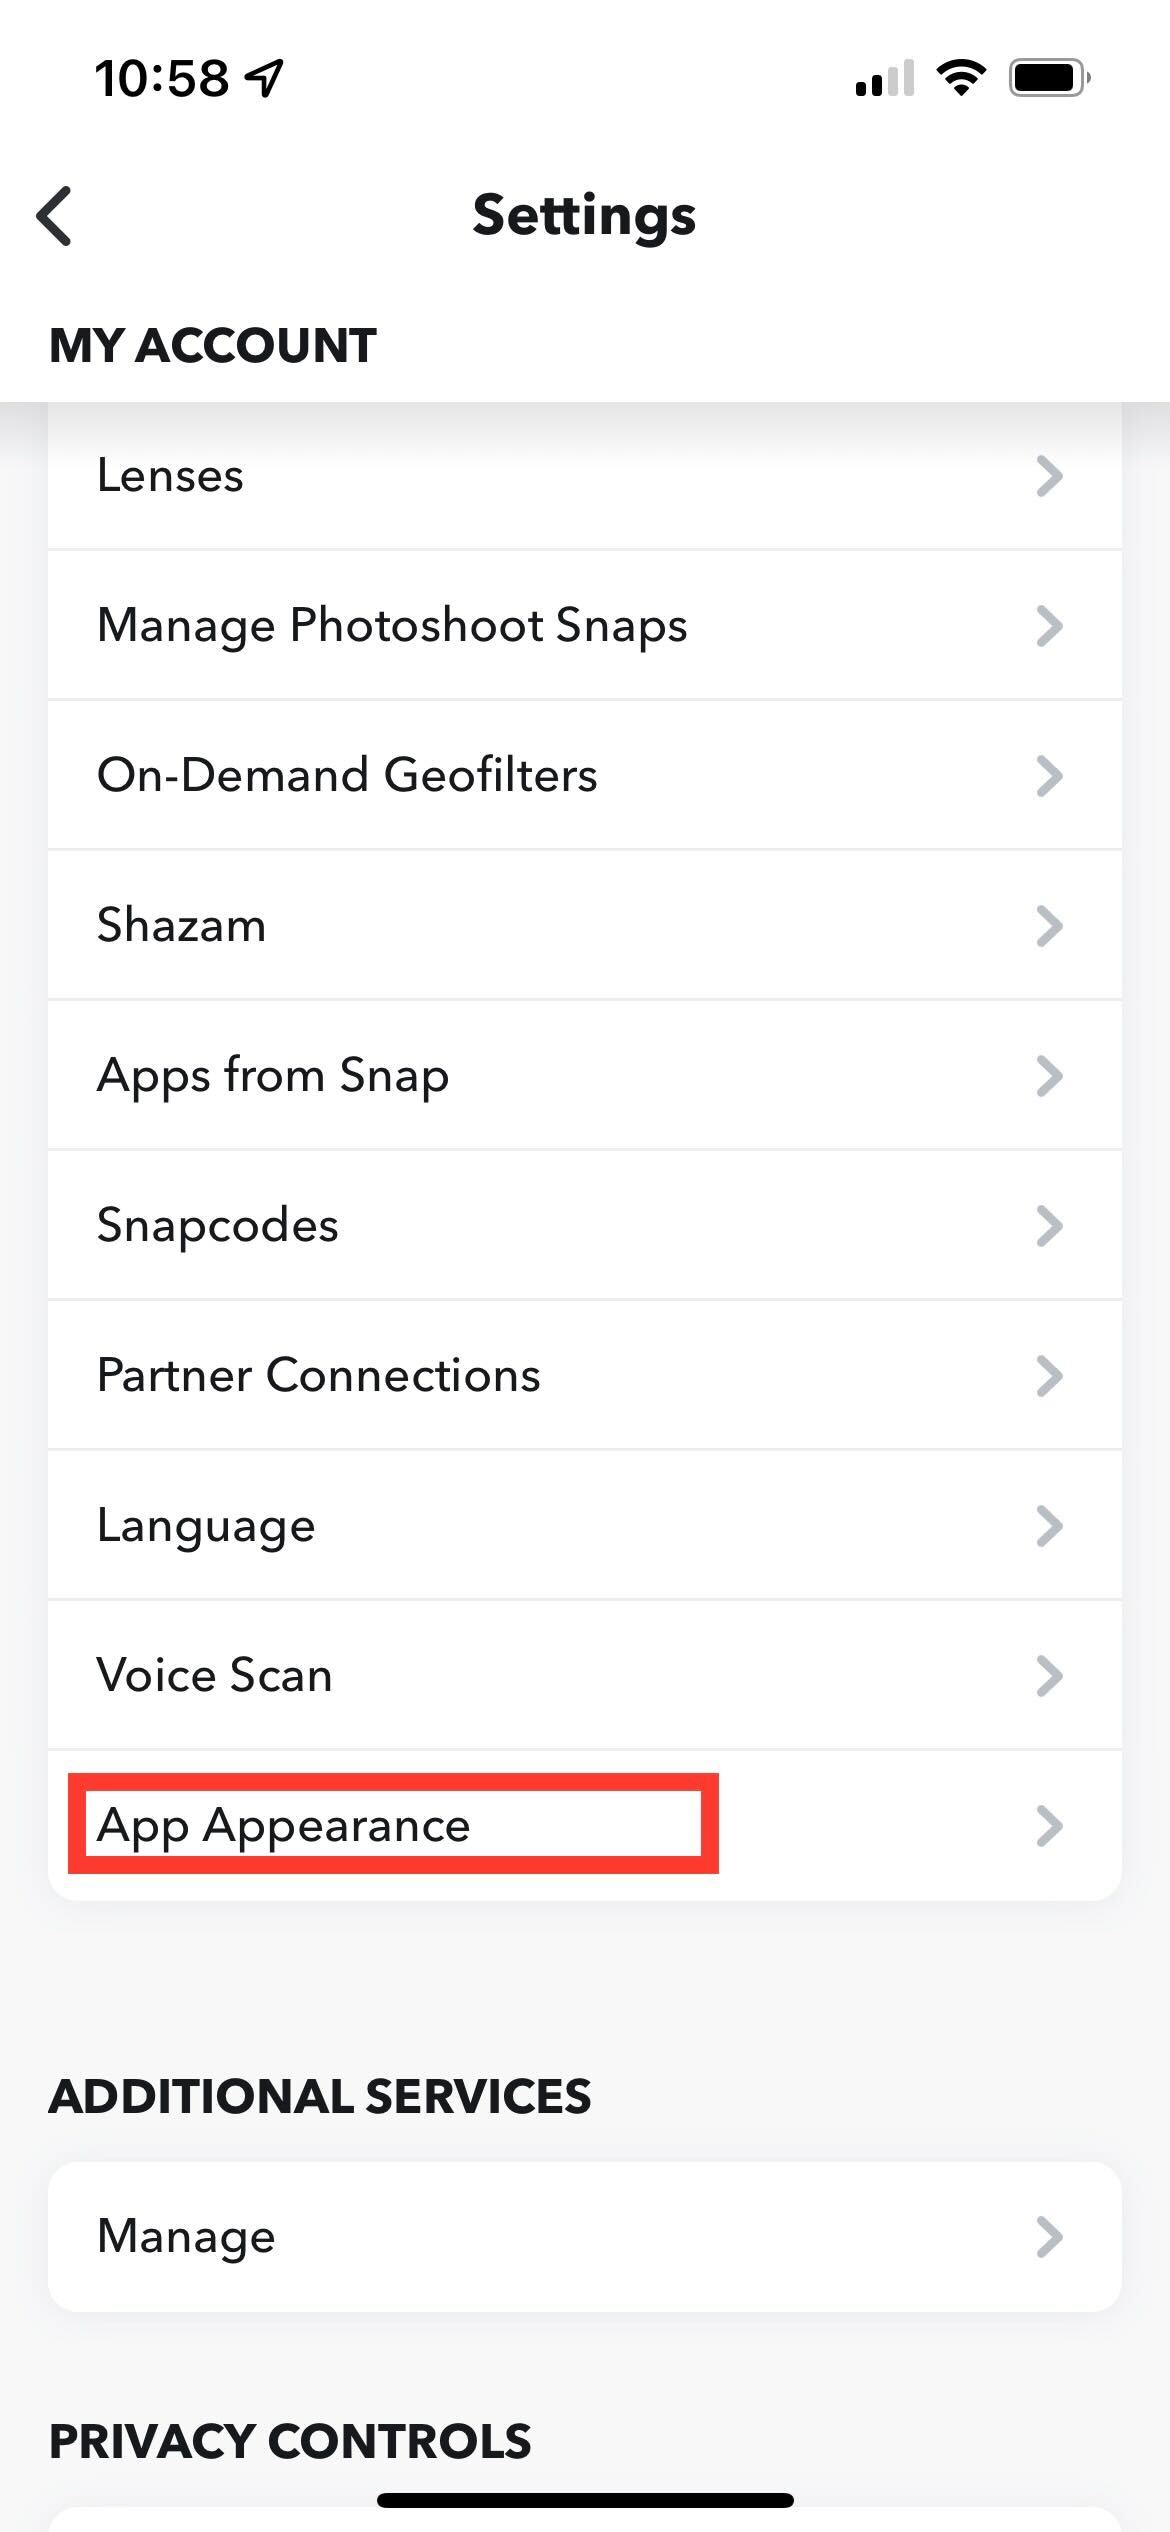 Klicken Sie auf App Appereance, um fortzufahren